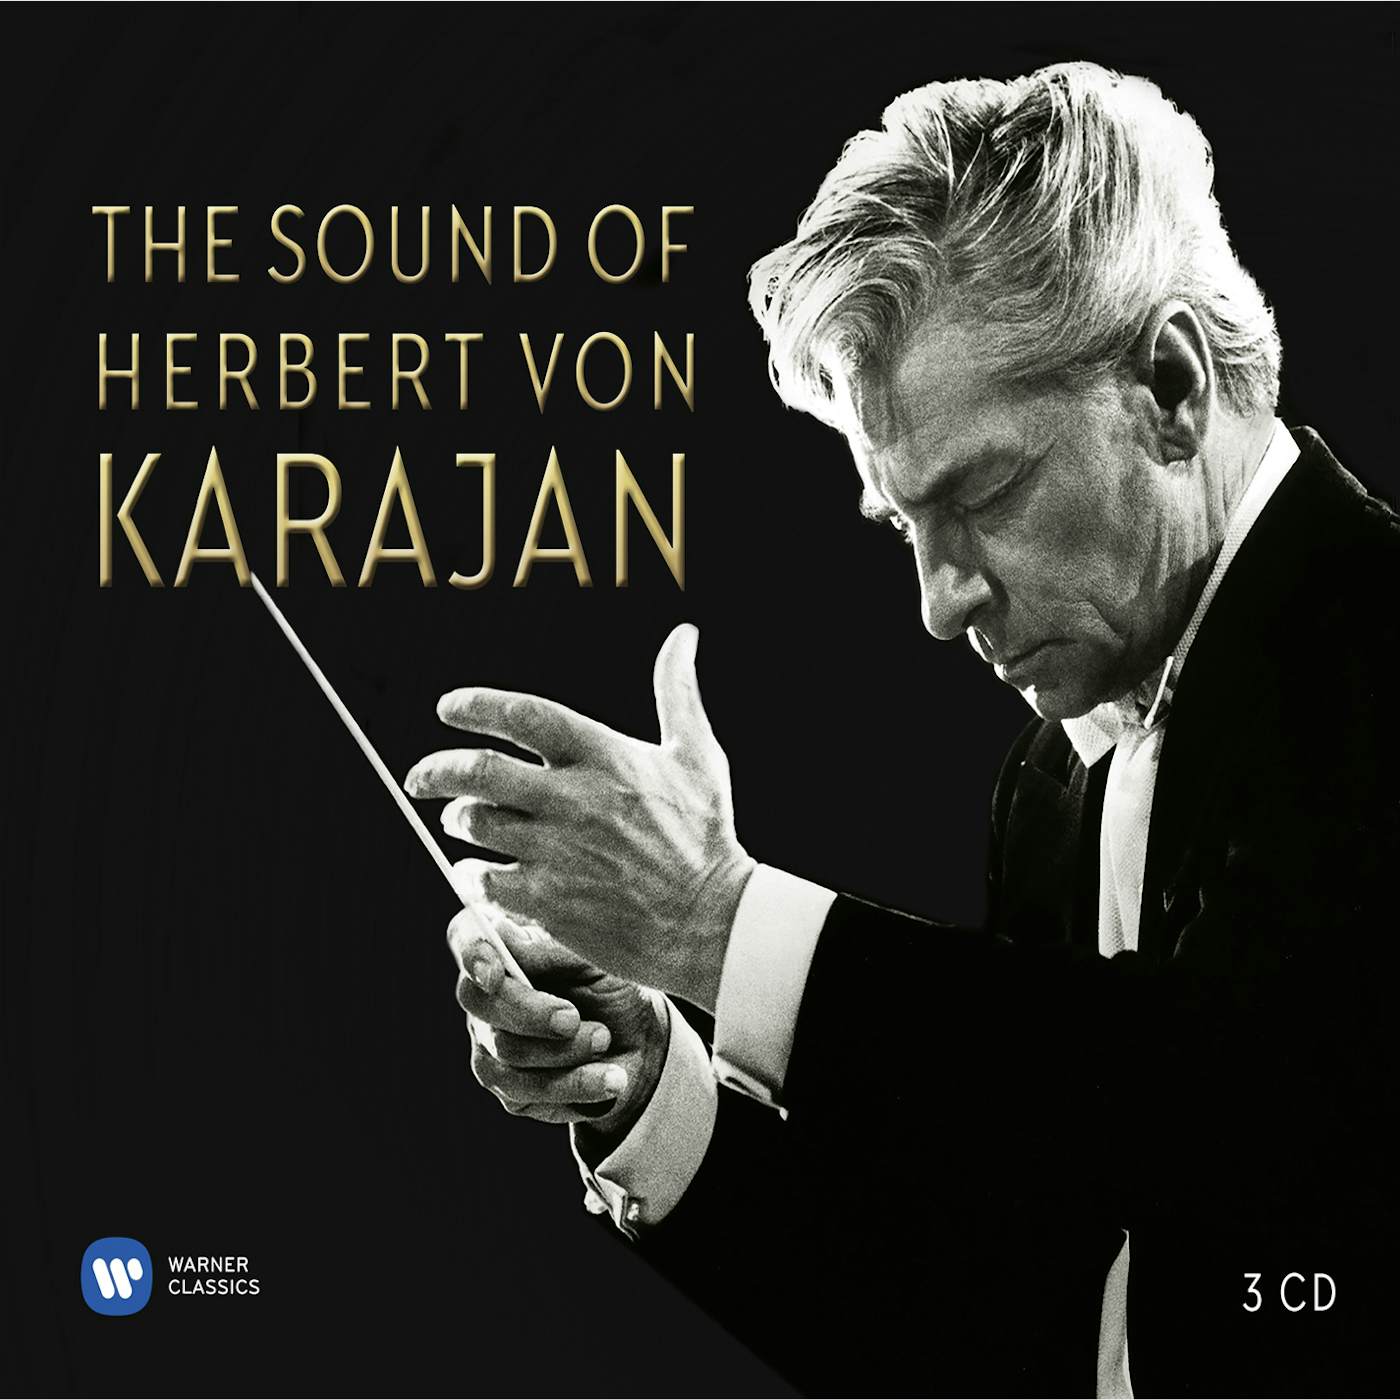 SOUND OF HERBERT VON KARAJAN CD